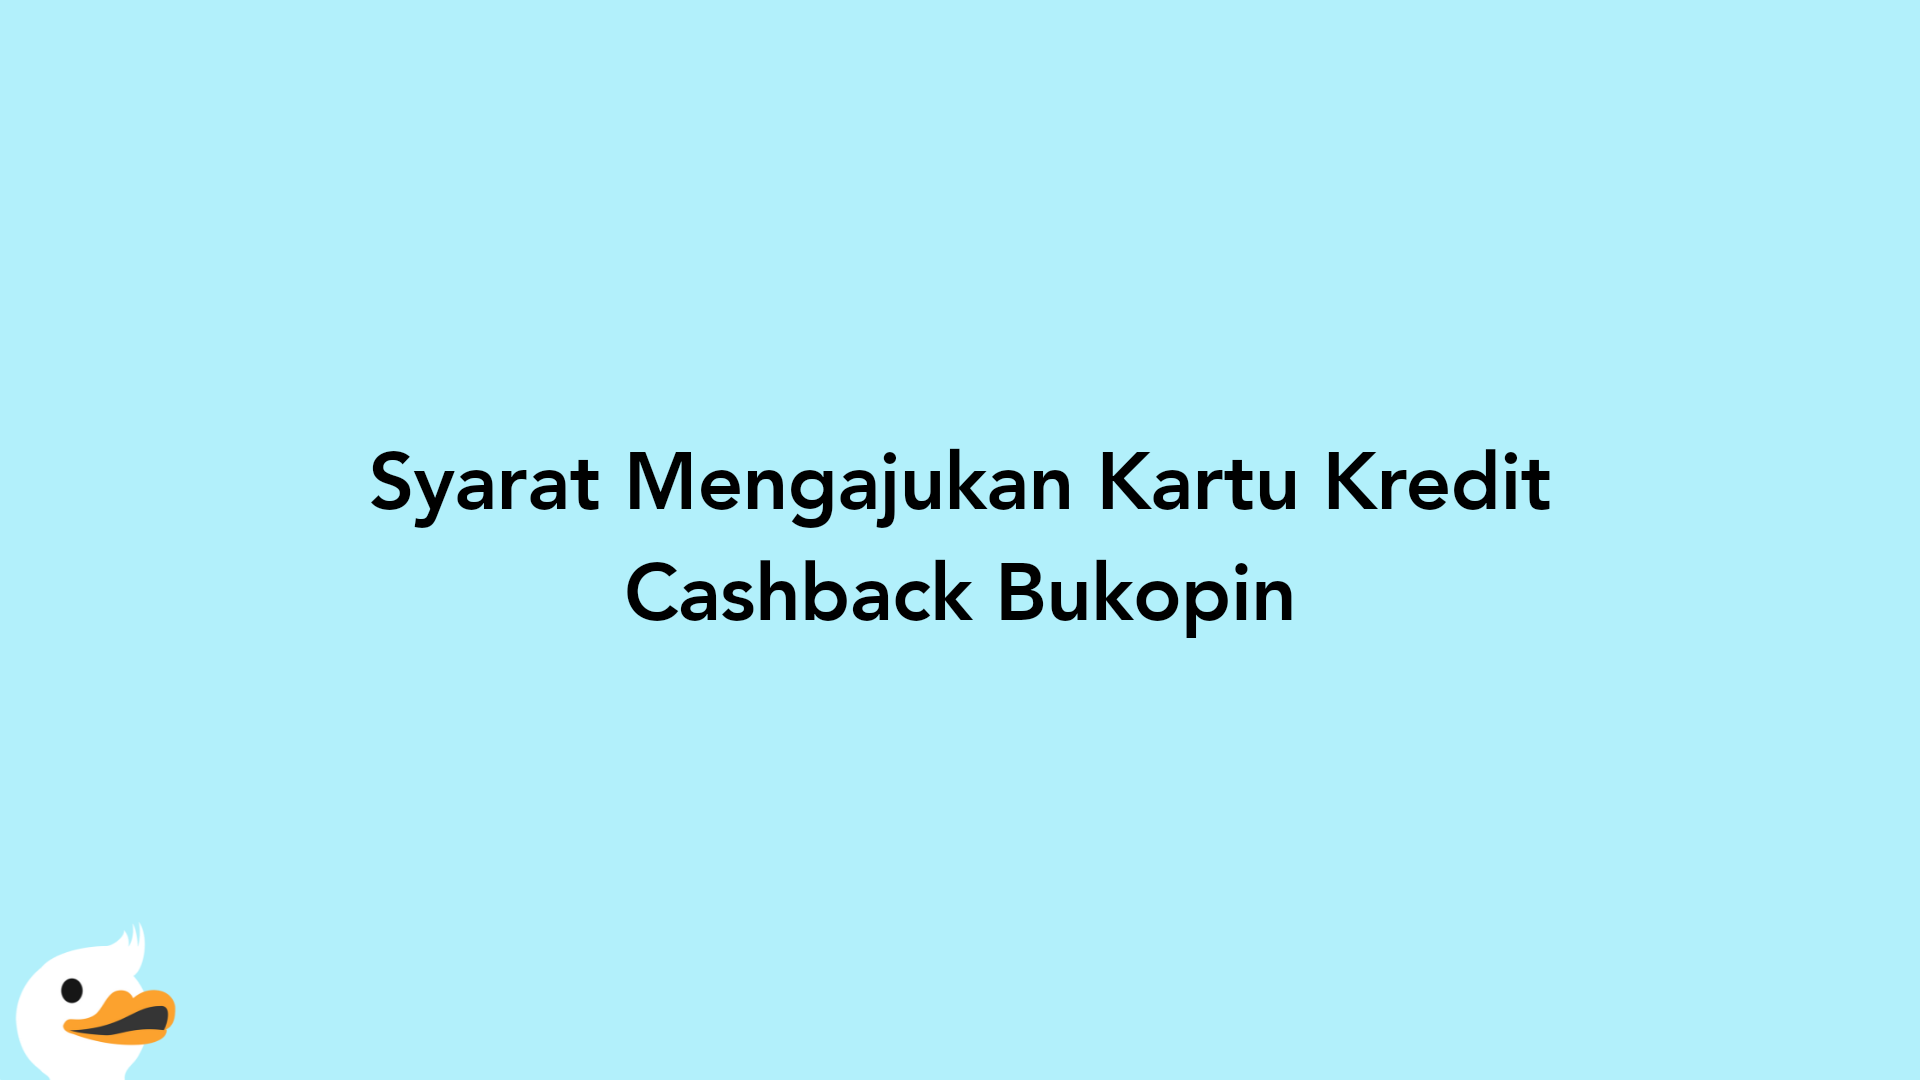 Syarat Mengajukan Kartu Kredit Cashback Bukopin